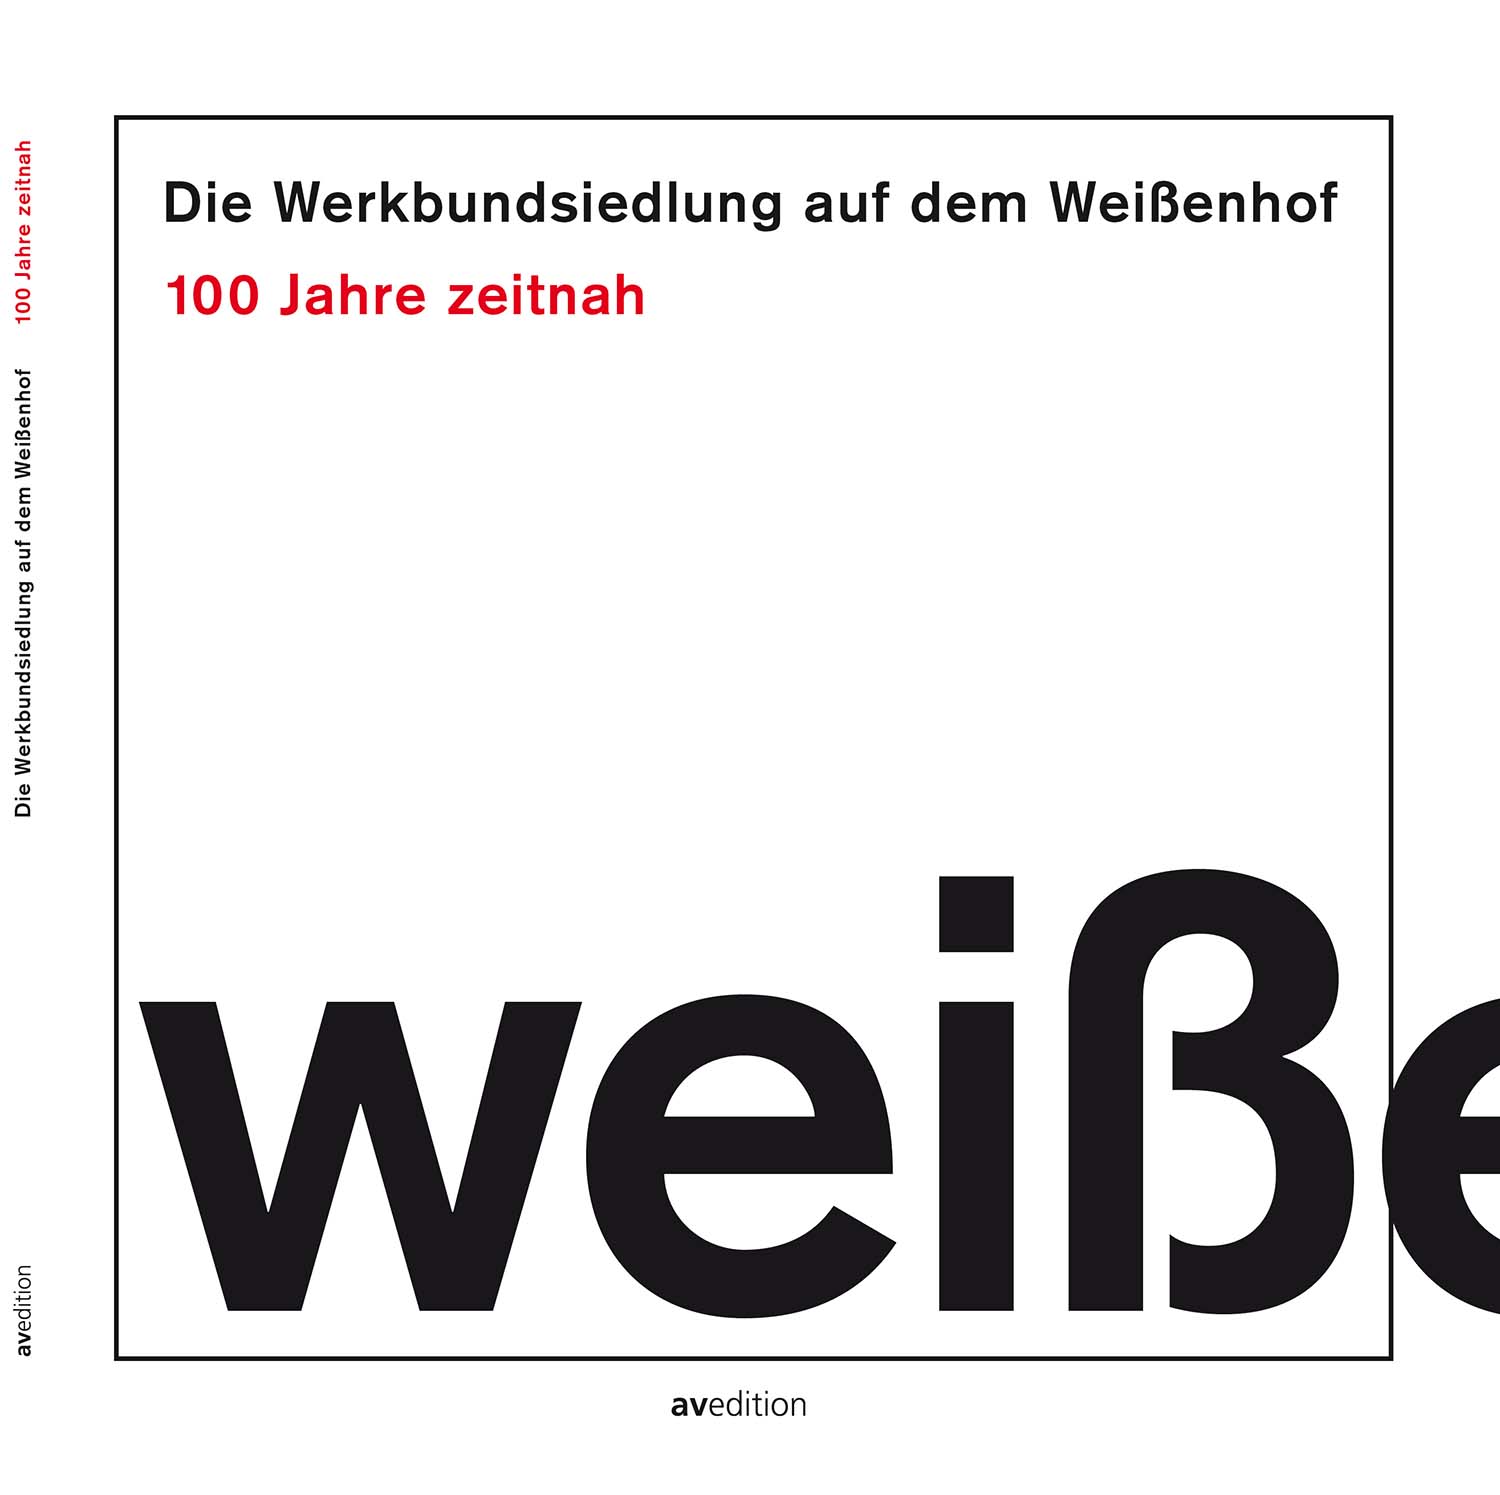 Изображение Werkbund Settlement Weissenhof